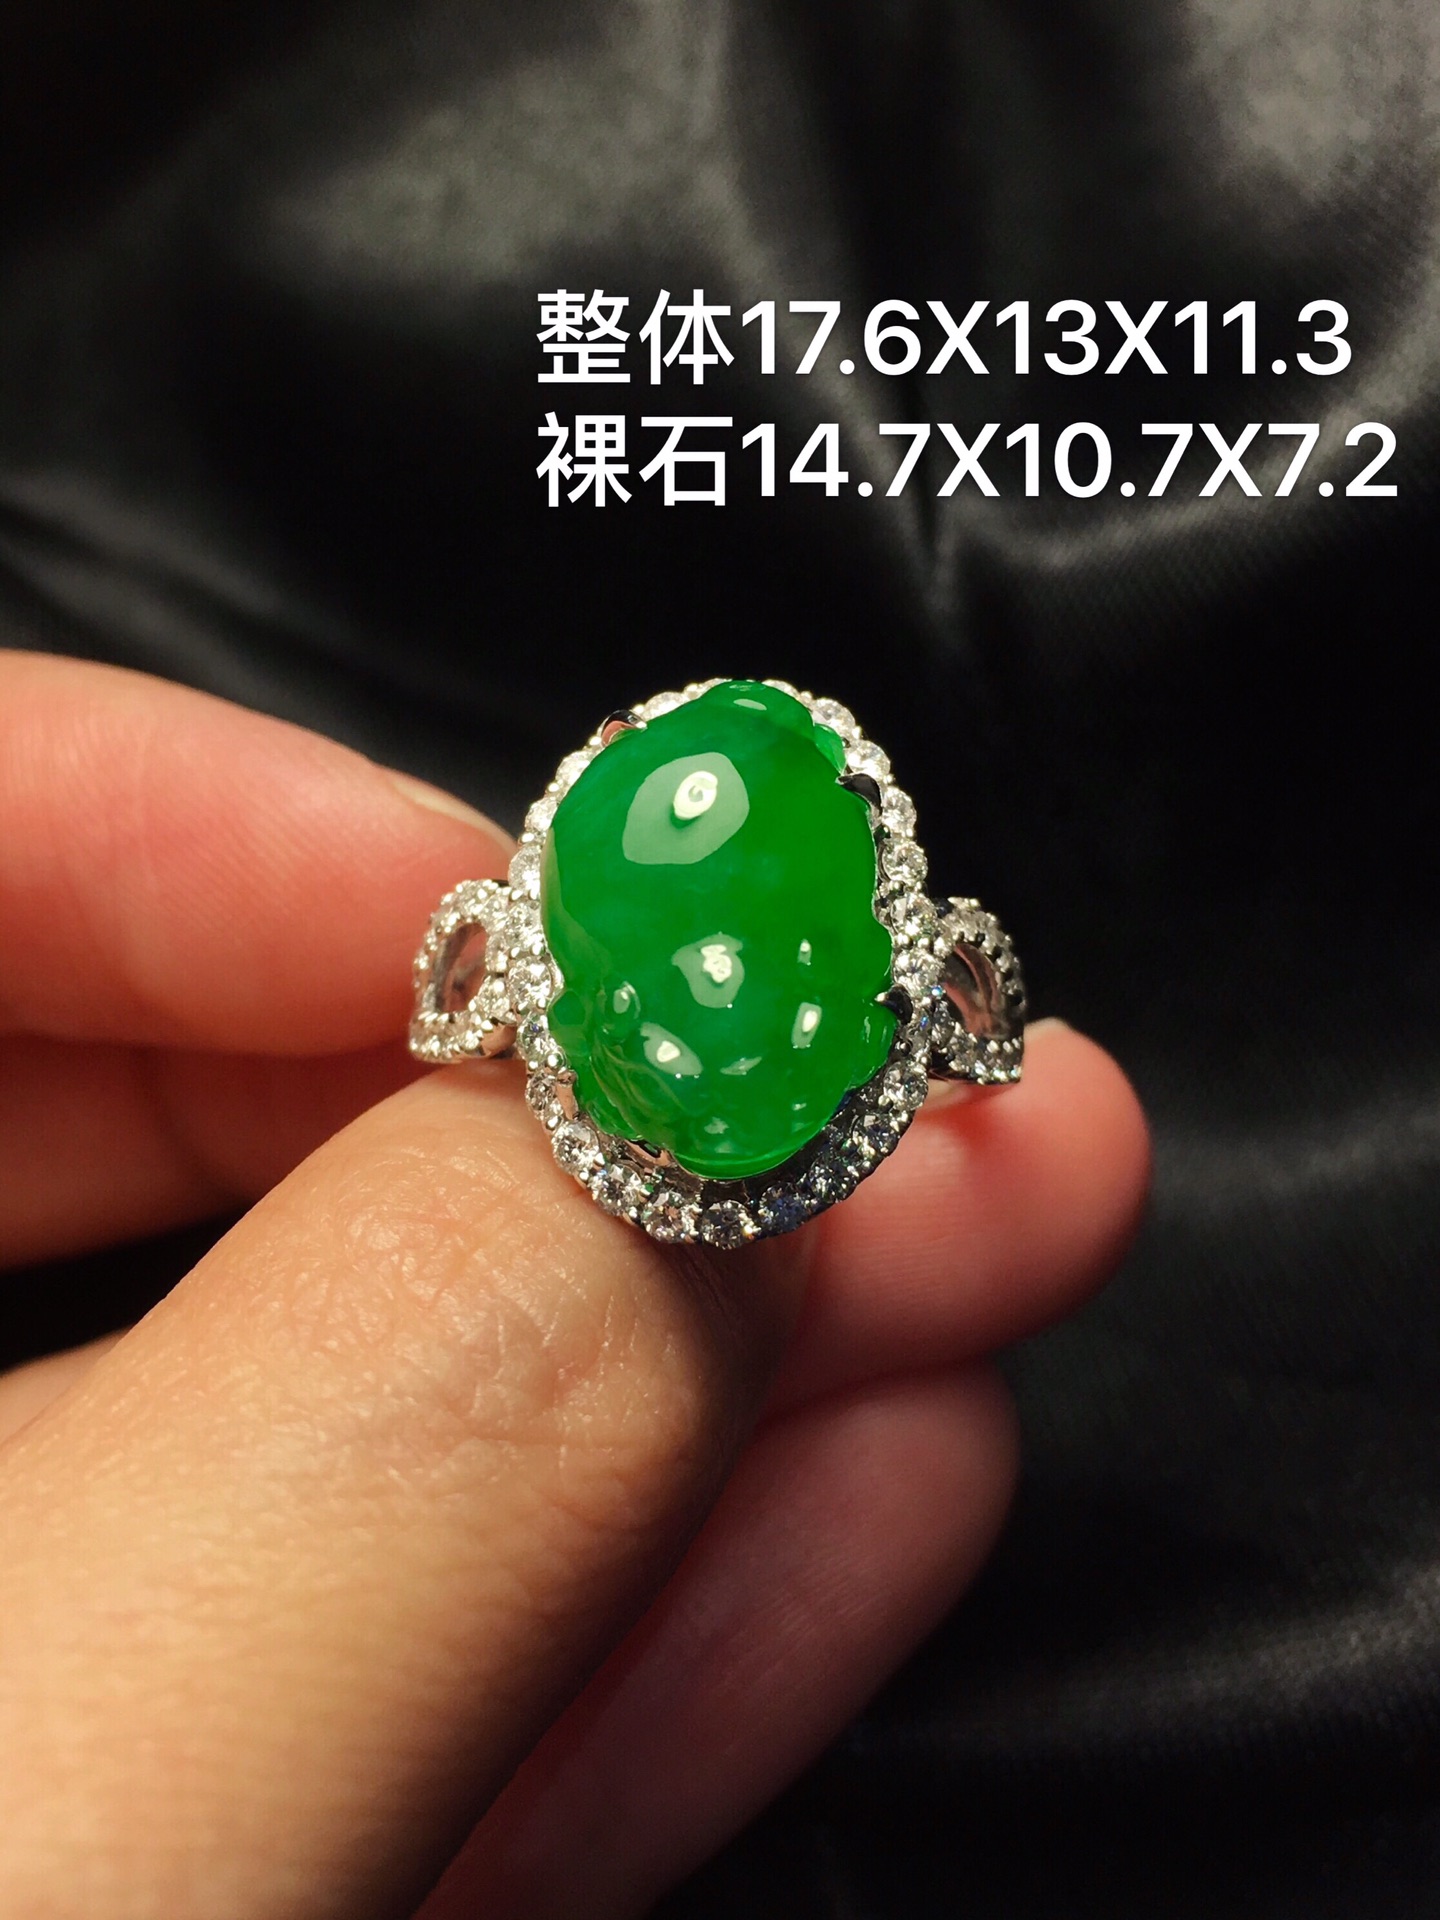 质量辣绿貔貅戒指新品，刚设计好的一款辣绿貔貅戒指非常饱满，玉质细腻。完美整体17.6X13X11.3裸石14.7X10.7X7.2特惠������������